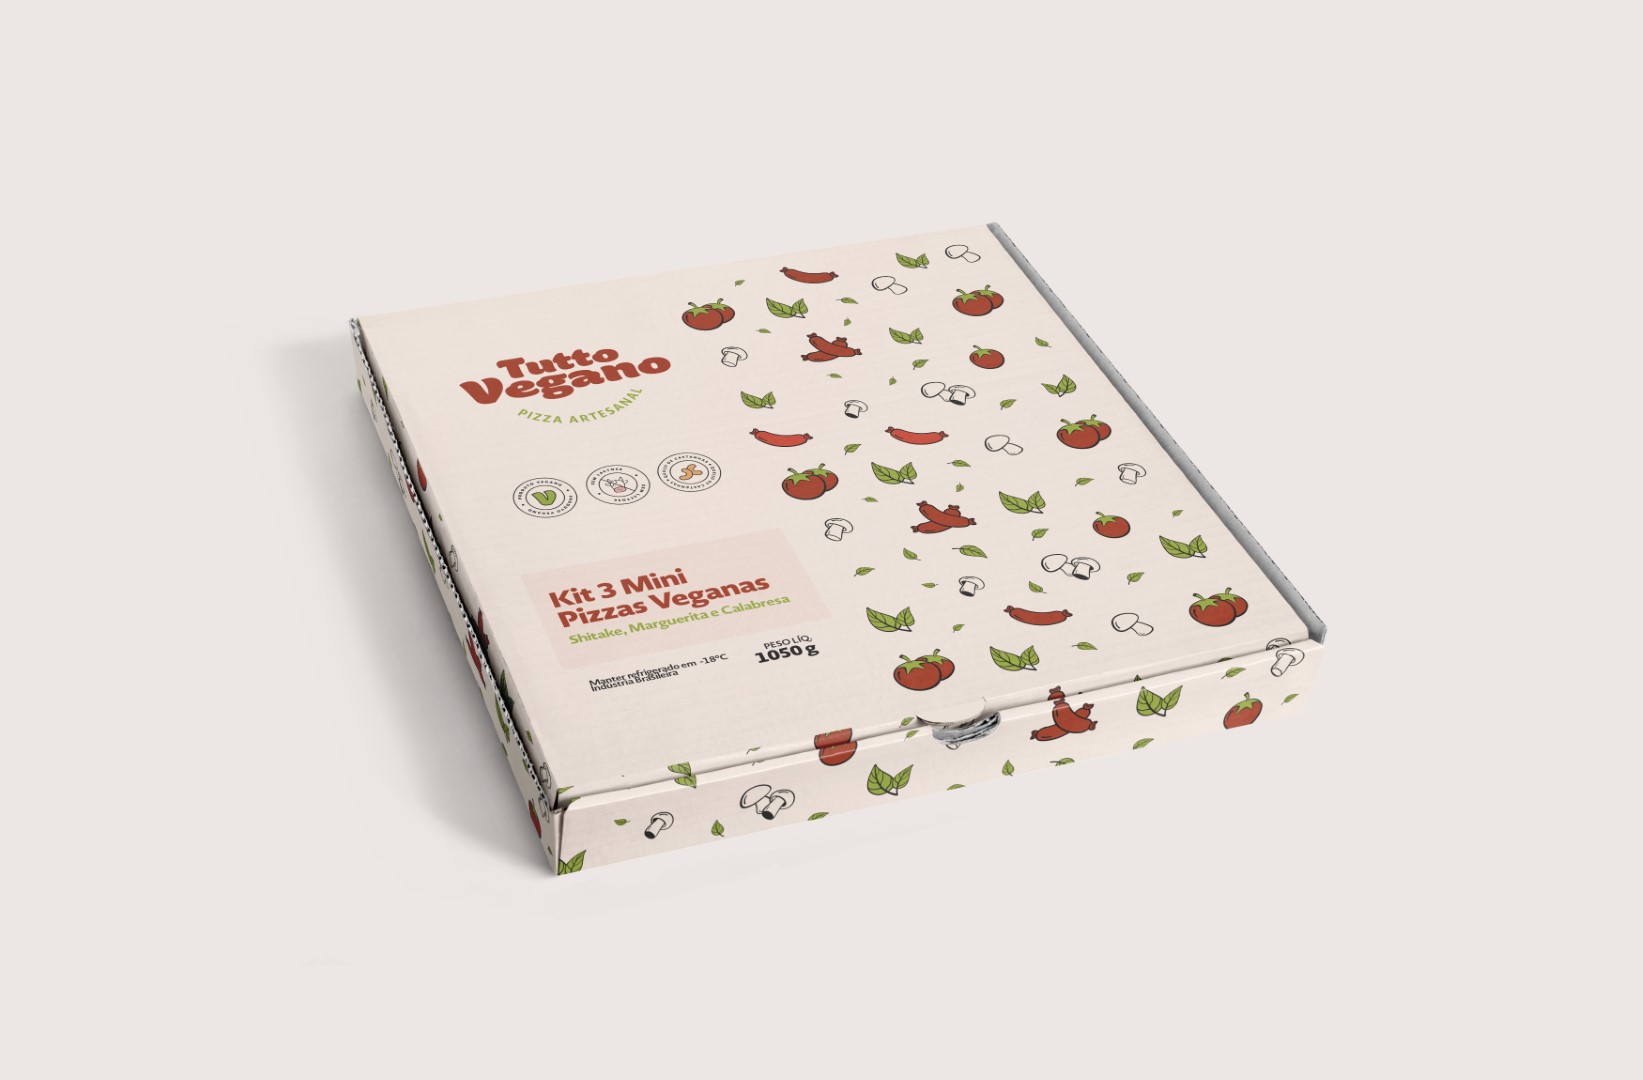 Tutto Vegano - Identidade Visual - Embalagem Pizza